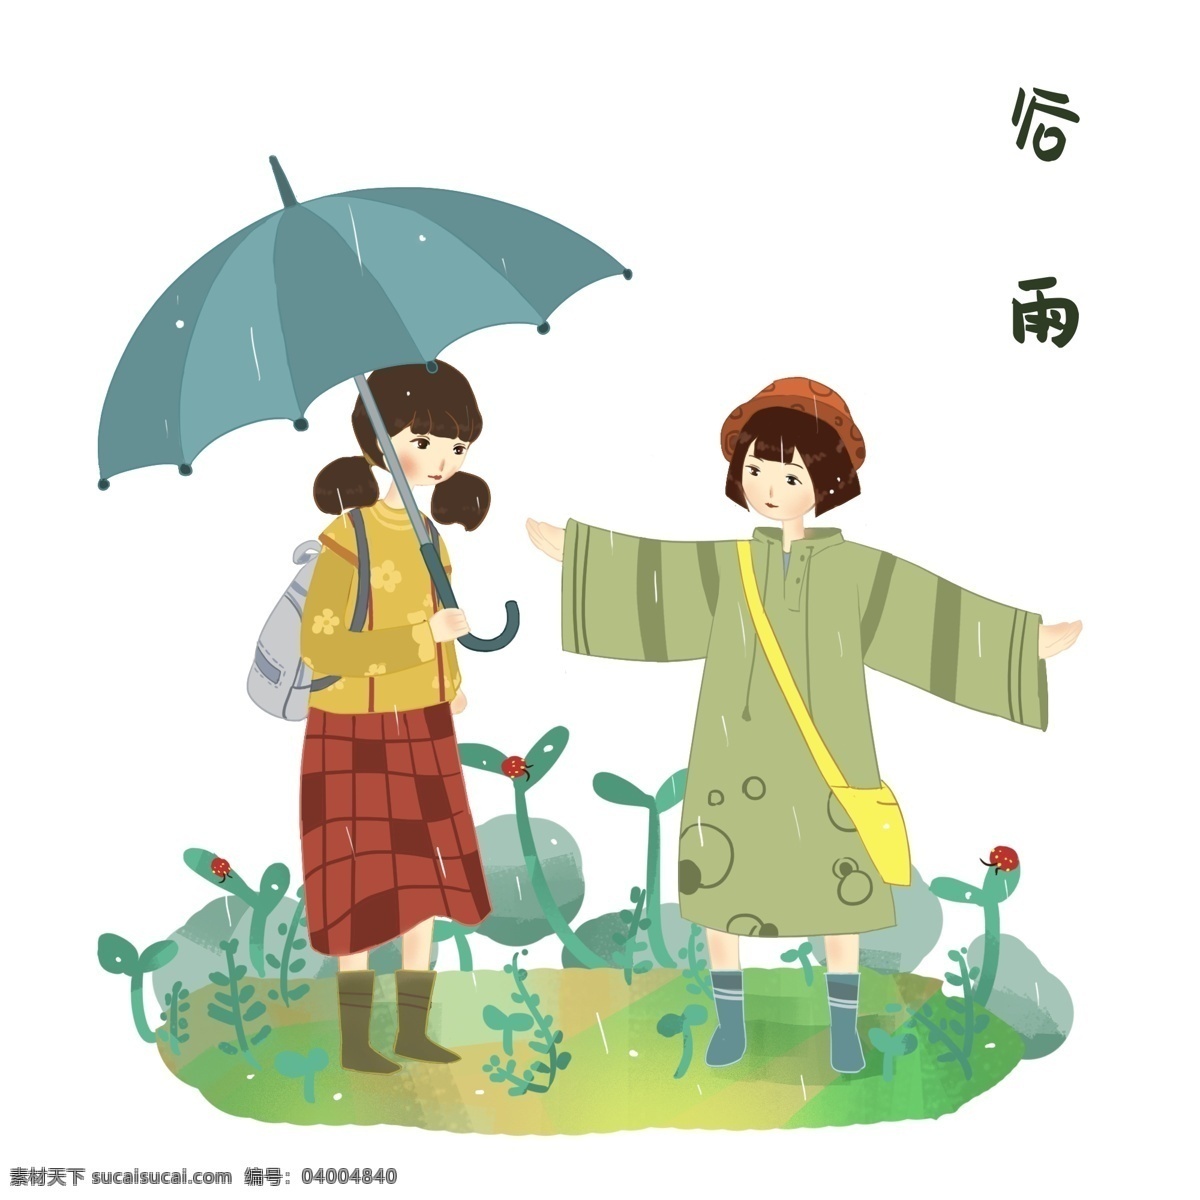 谷雨 散步 小女孩 谷雨人物插画 散步的小女孩 蓝色的雨伞 绿色的叶子 黄色的书包 卡通人物